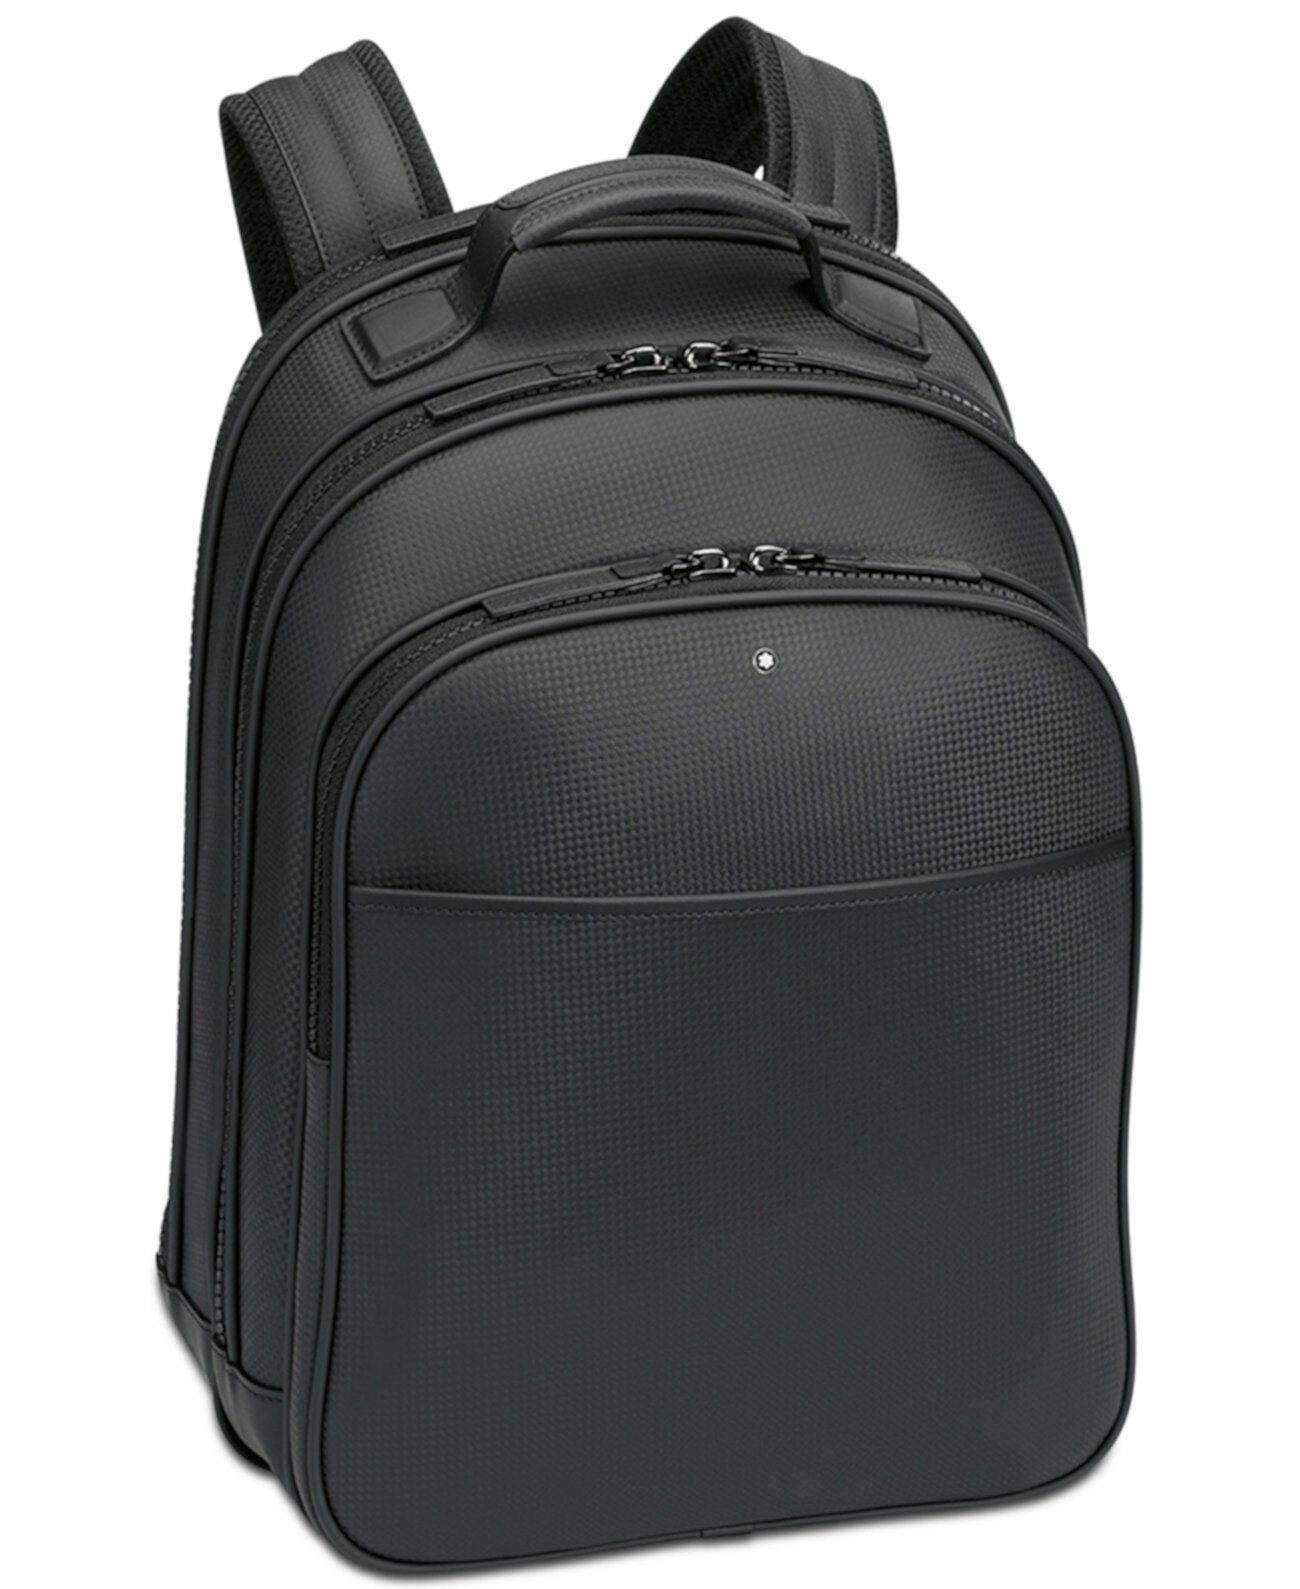 Extreme Rucksack Маленький черный кожаный рюкзак Montblanc